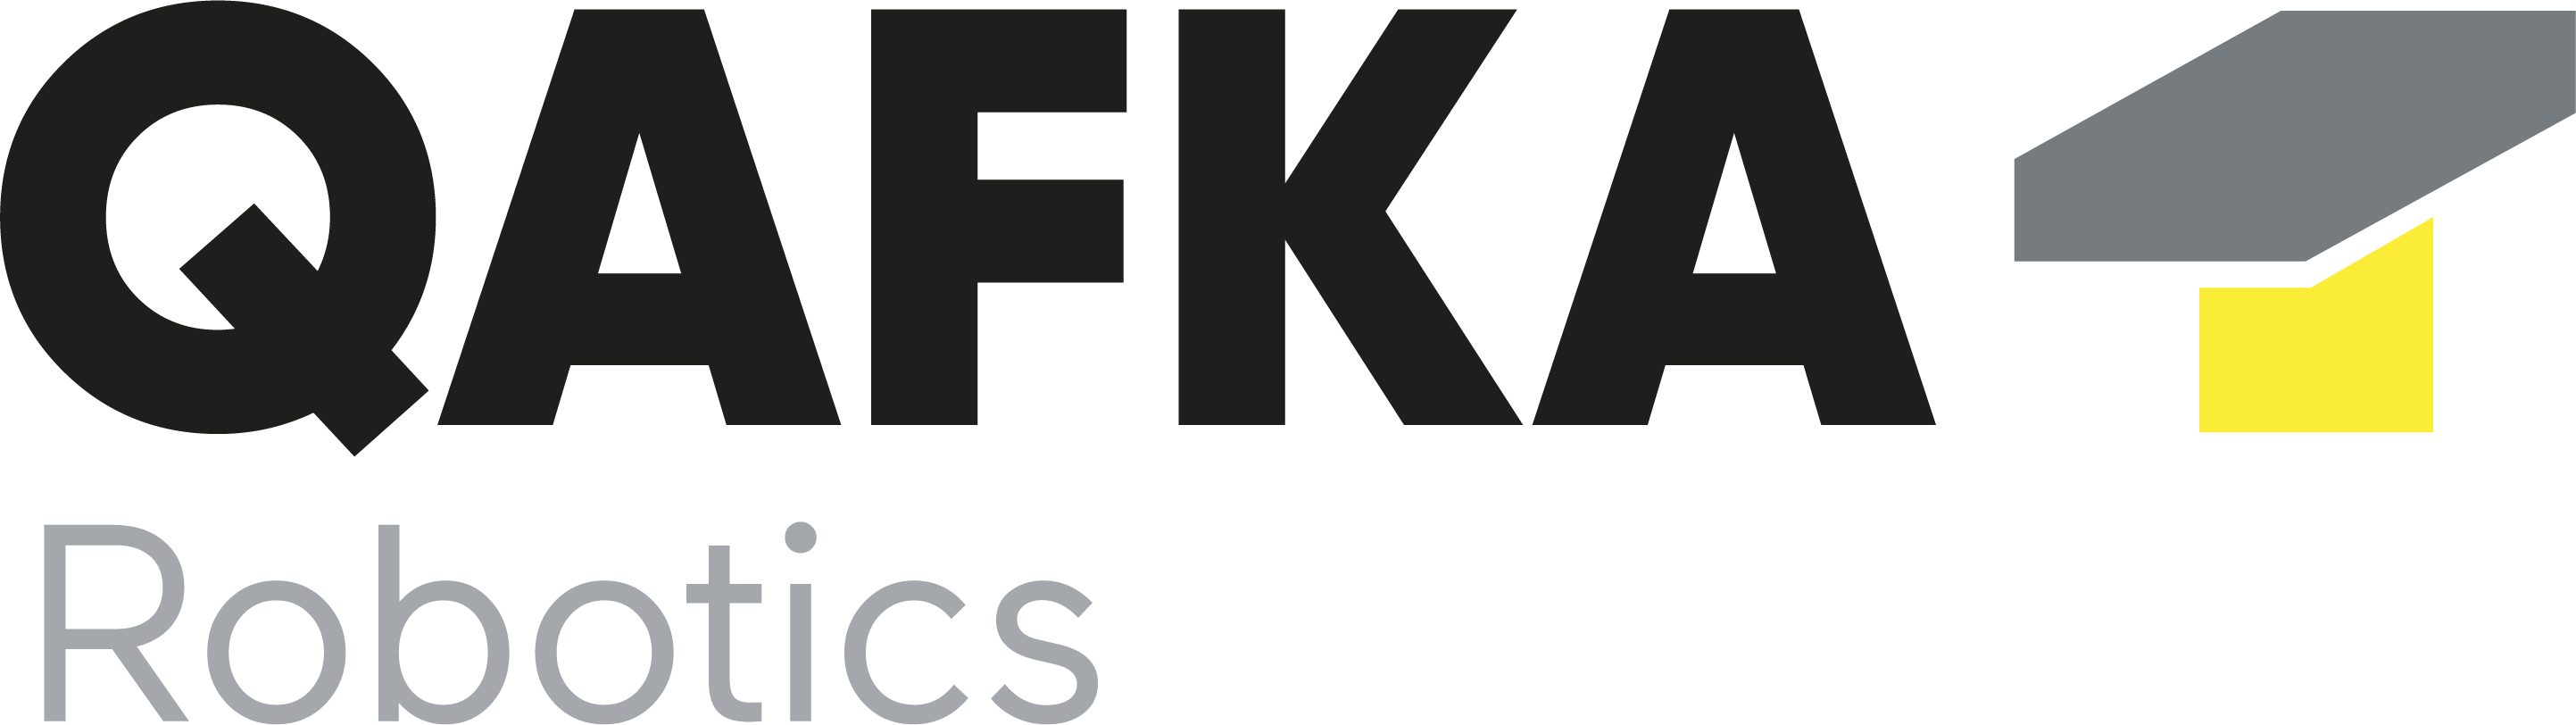 Qafka Robotics Logo